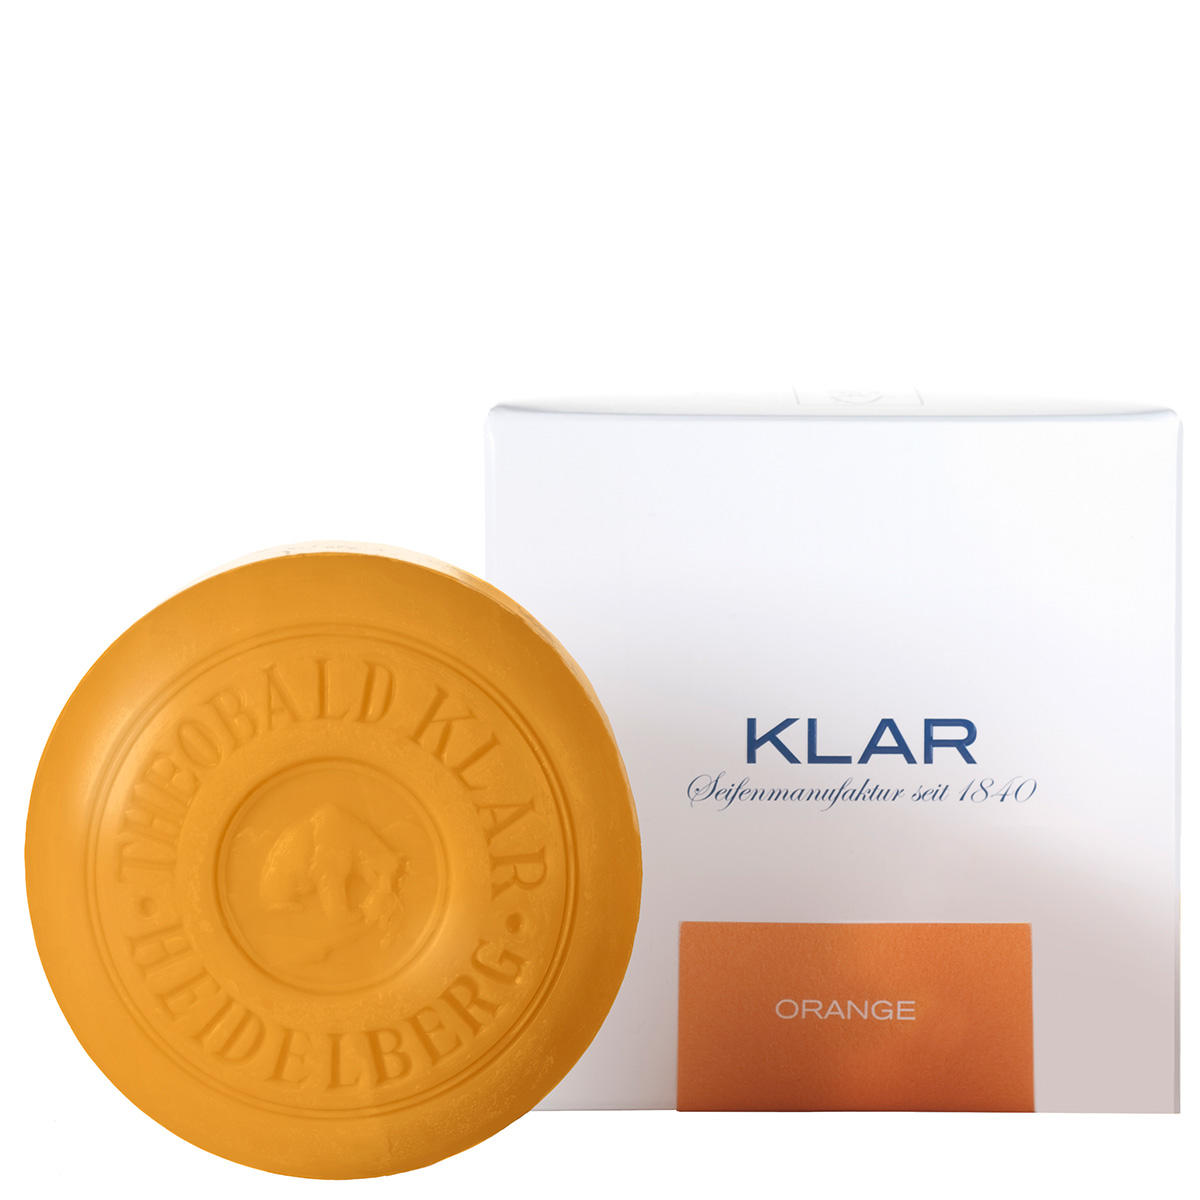 KLAR Sapone all'arancia 150 g - 1